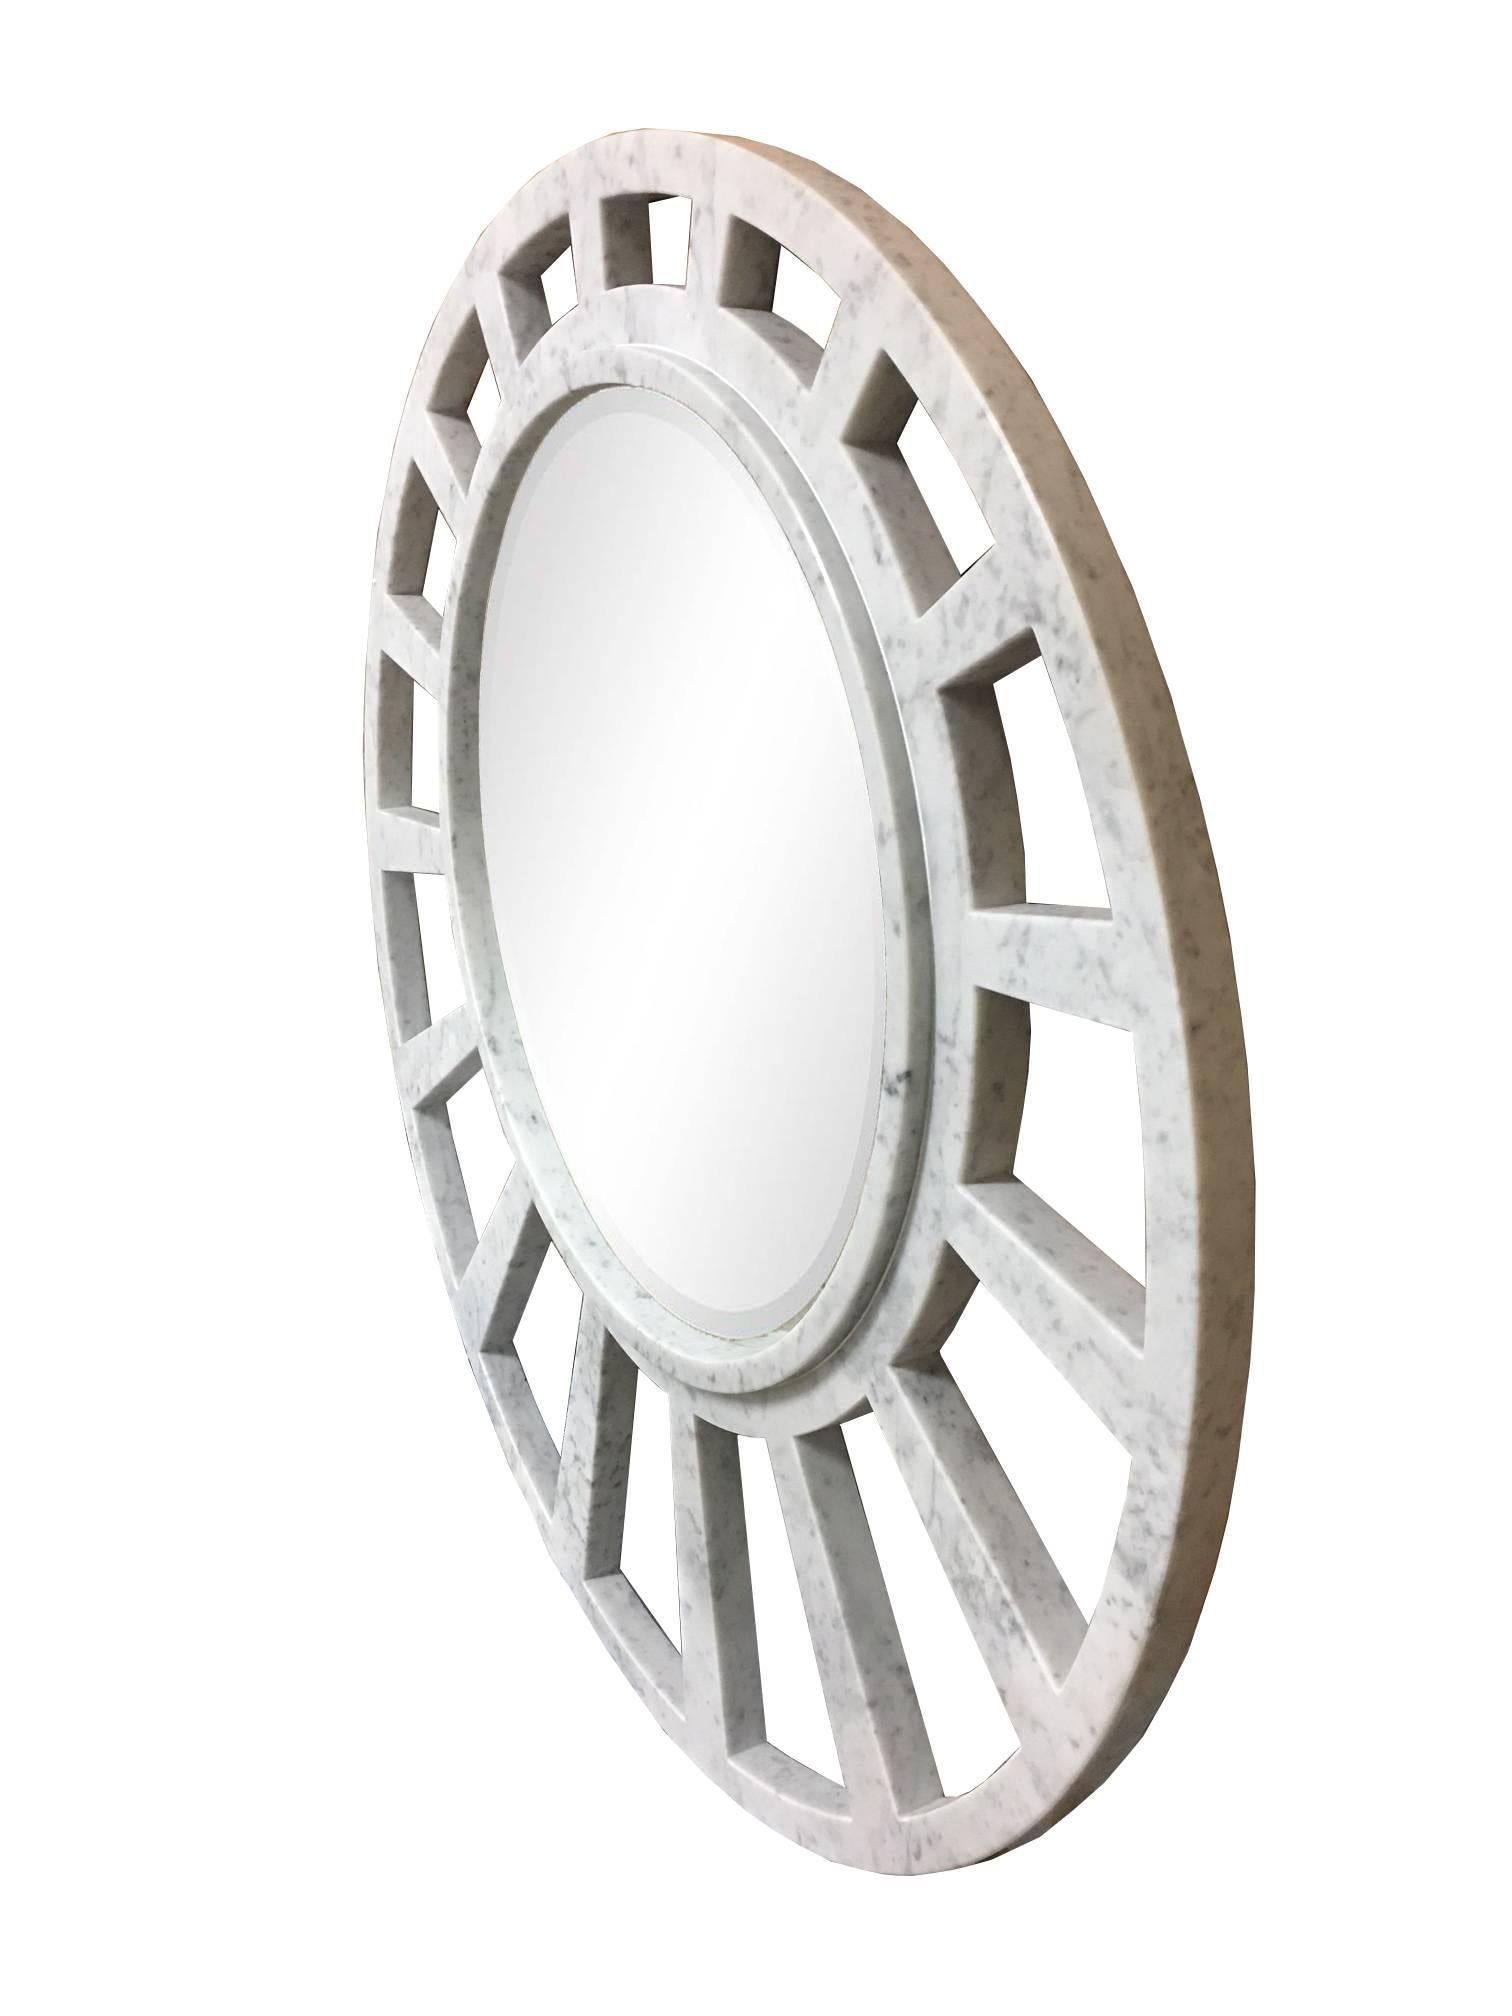 Miroir en marbre blanc italien de Carrare de fabrication artisanale avec un motif géométrique ouvert d'apparence elliptique qui encadre un grand miroir. Le motif du cadre ouvert simule une forme de soleil sobre et moderne.

Des dimensions sur